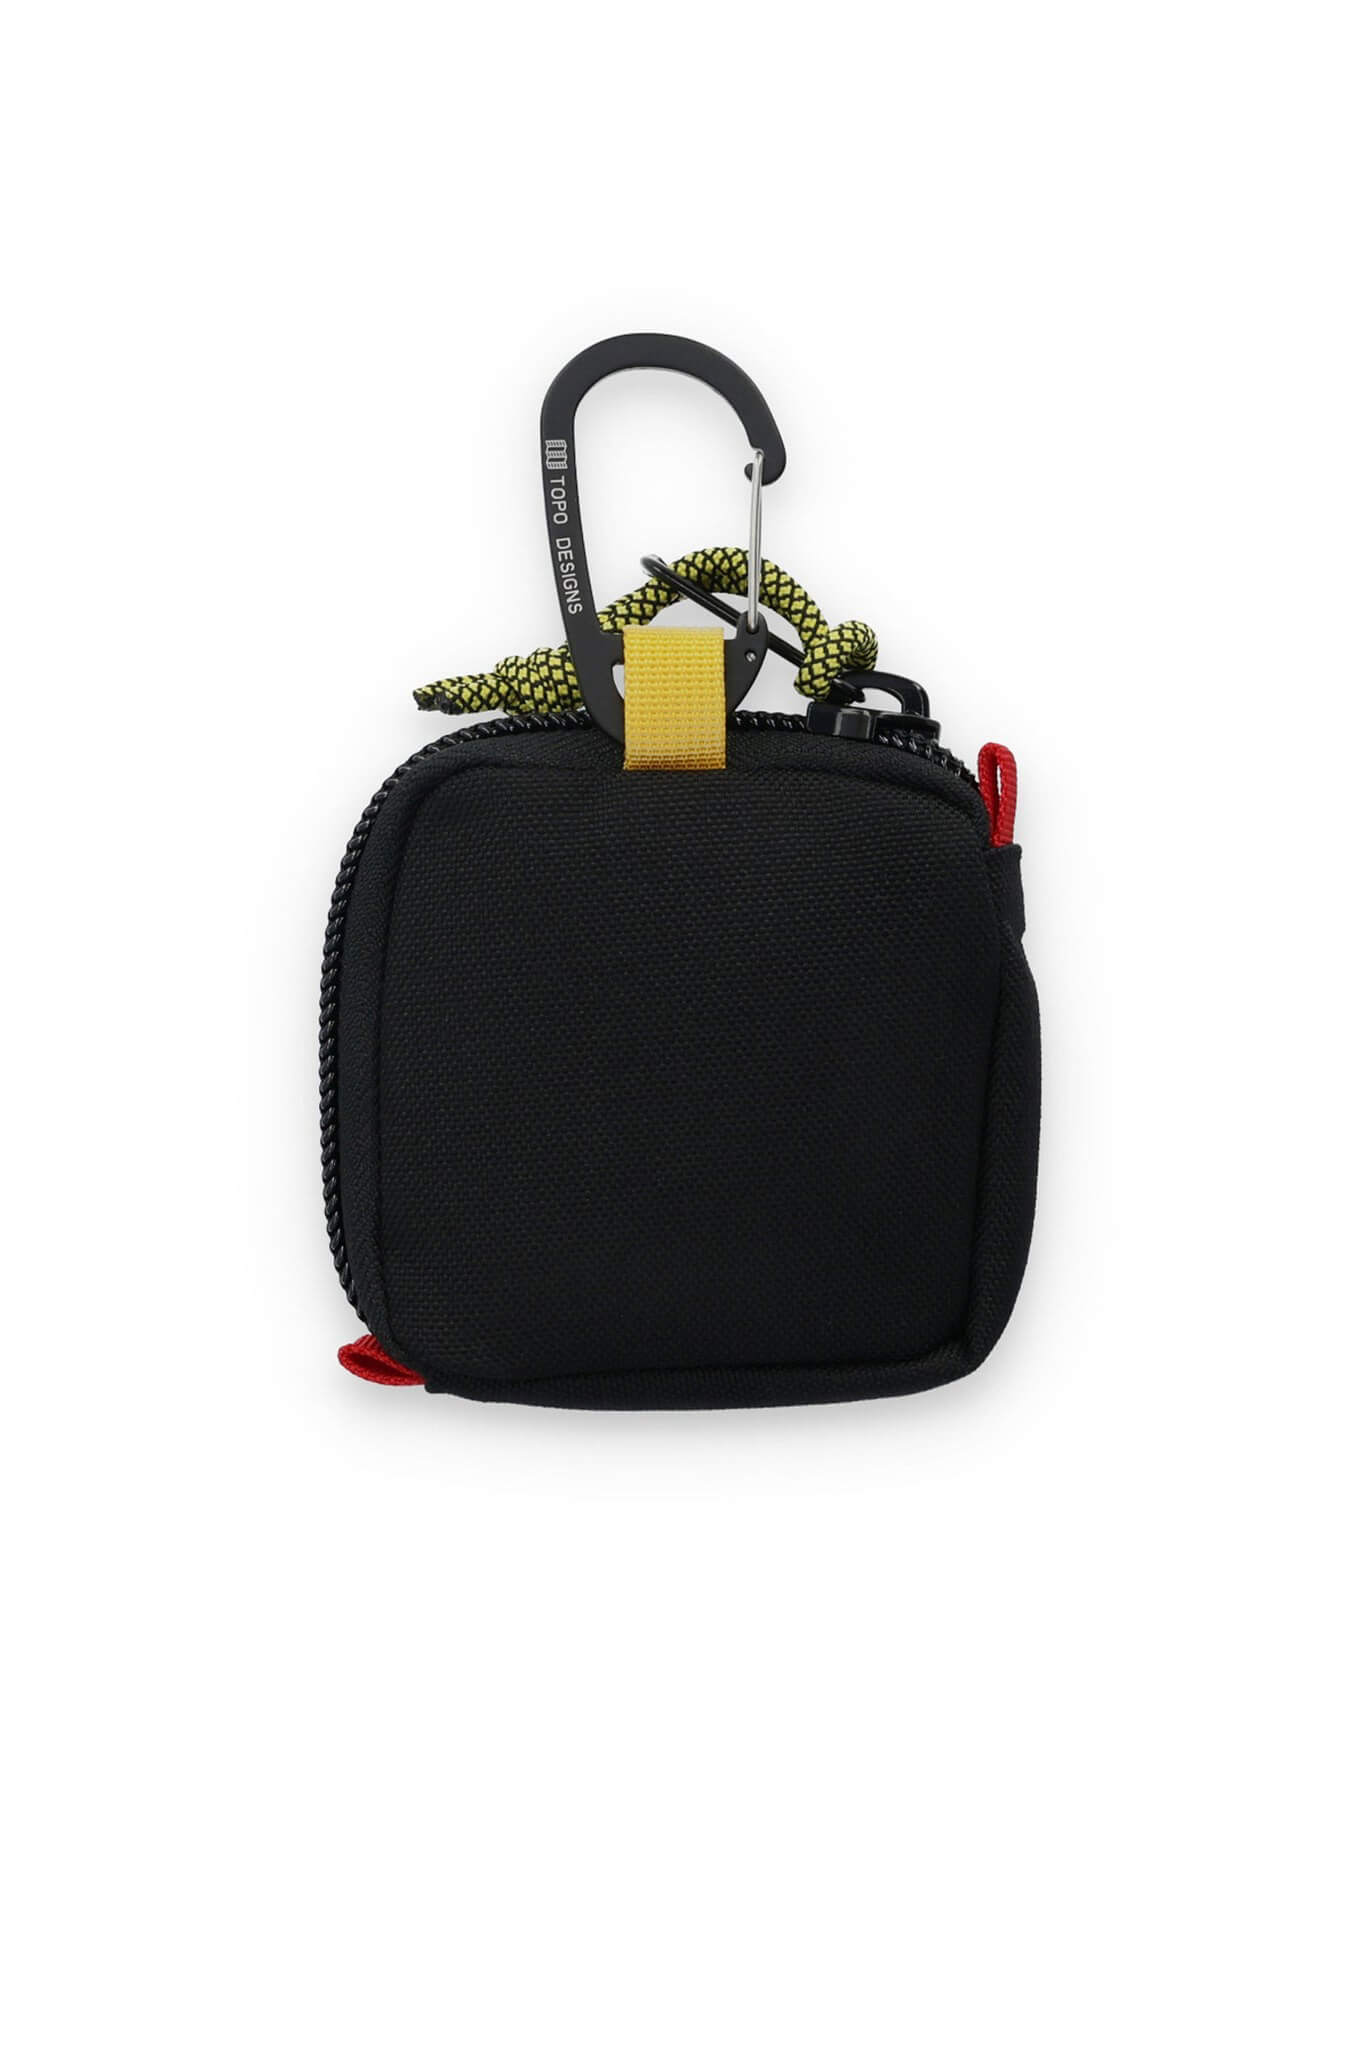 Topo Designs square bag in black